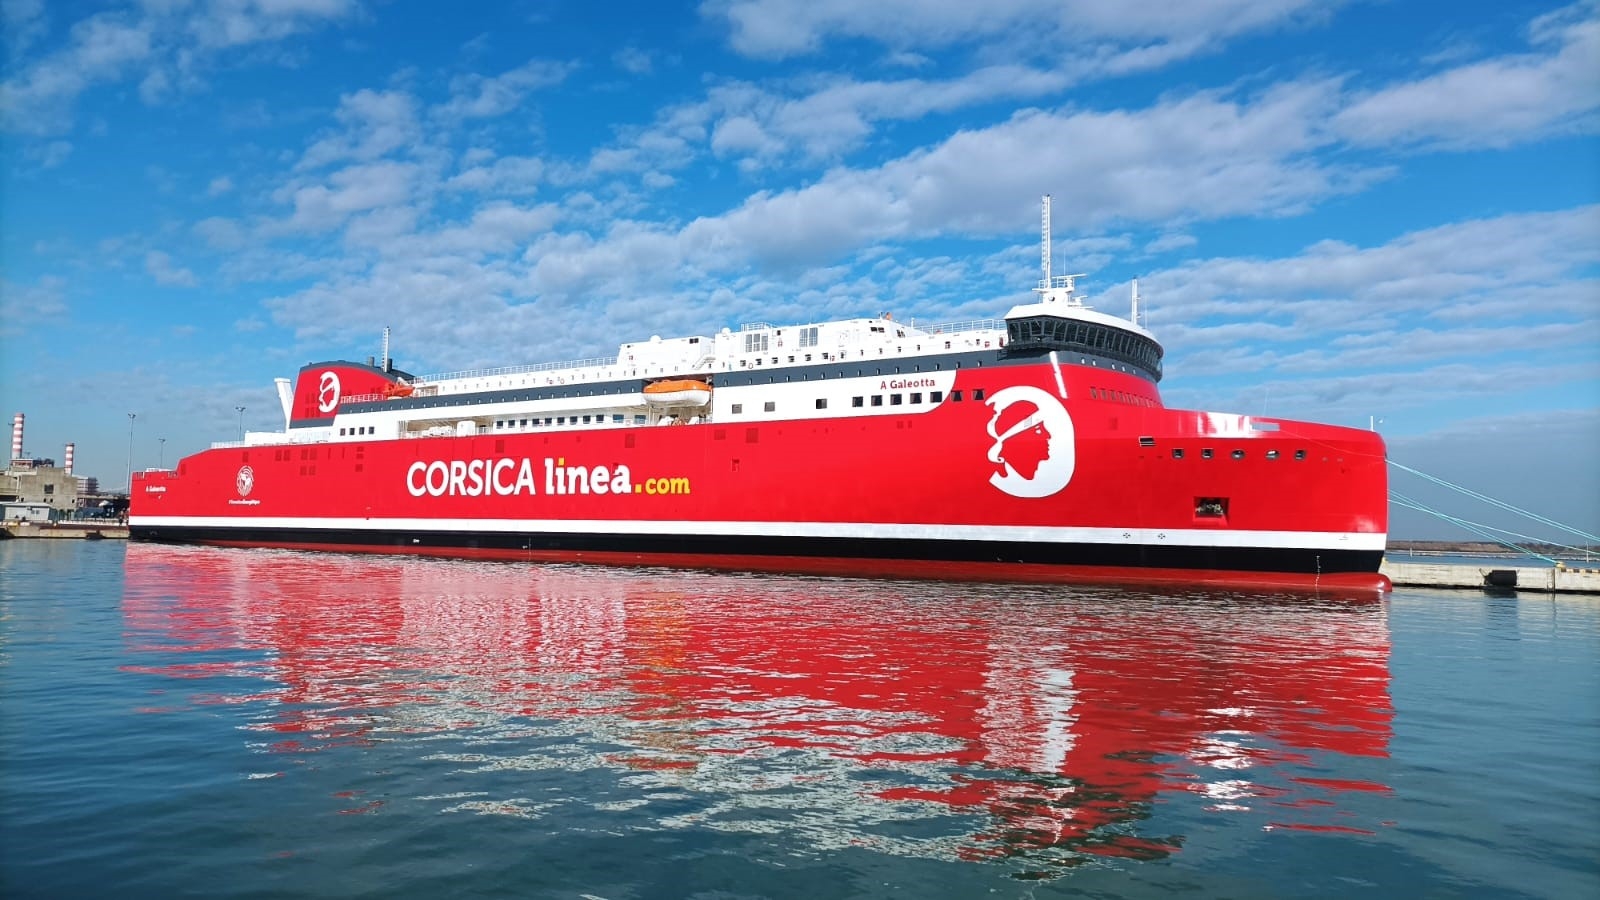 CORSICA linea accélère la décarbonation de sa flotte en mettant le cap sur le Biocarburant